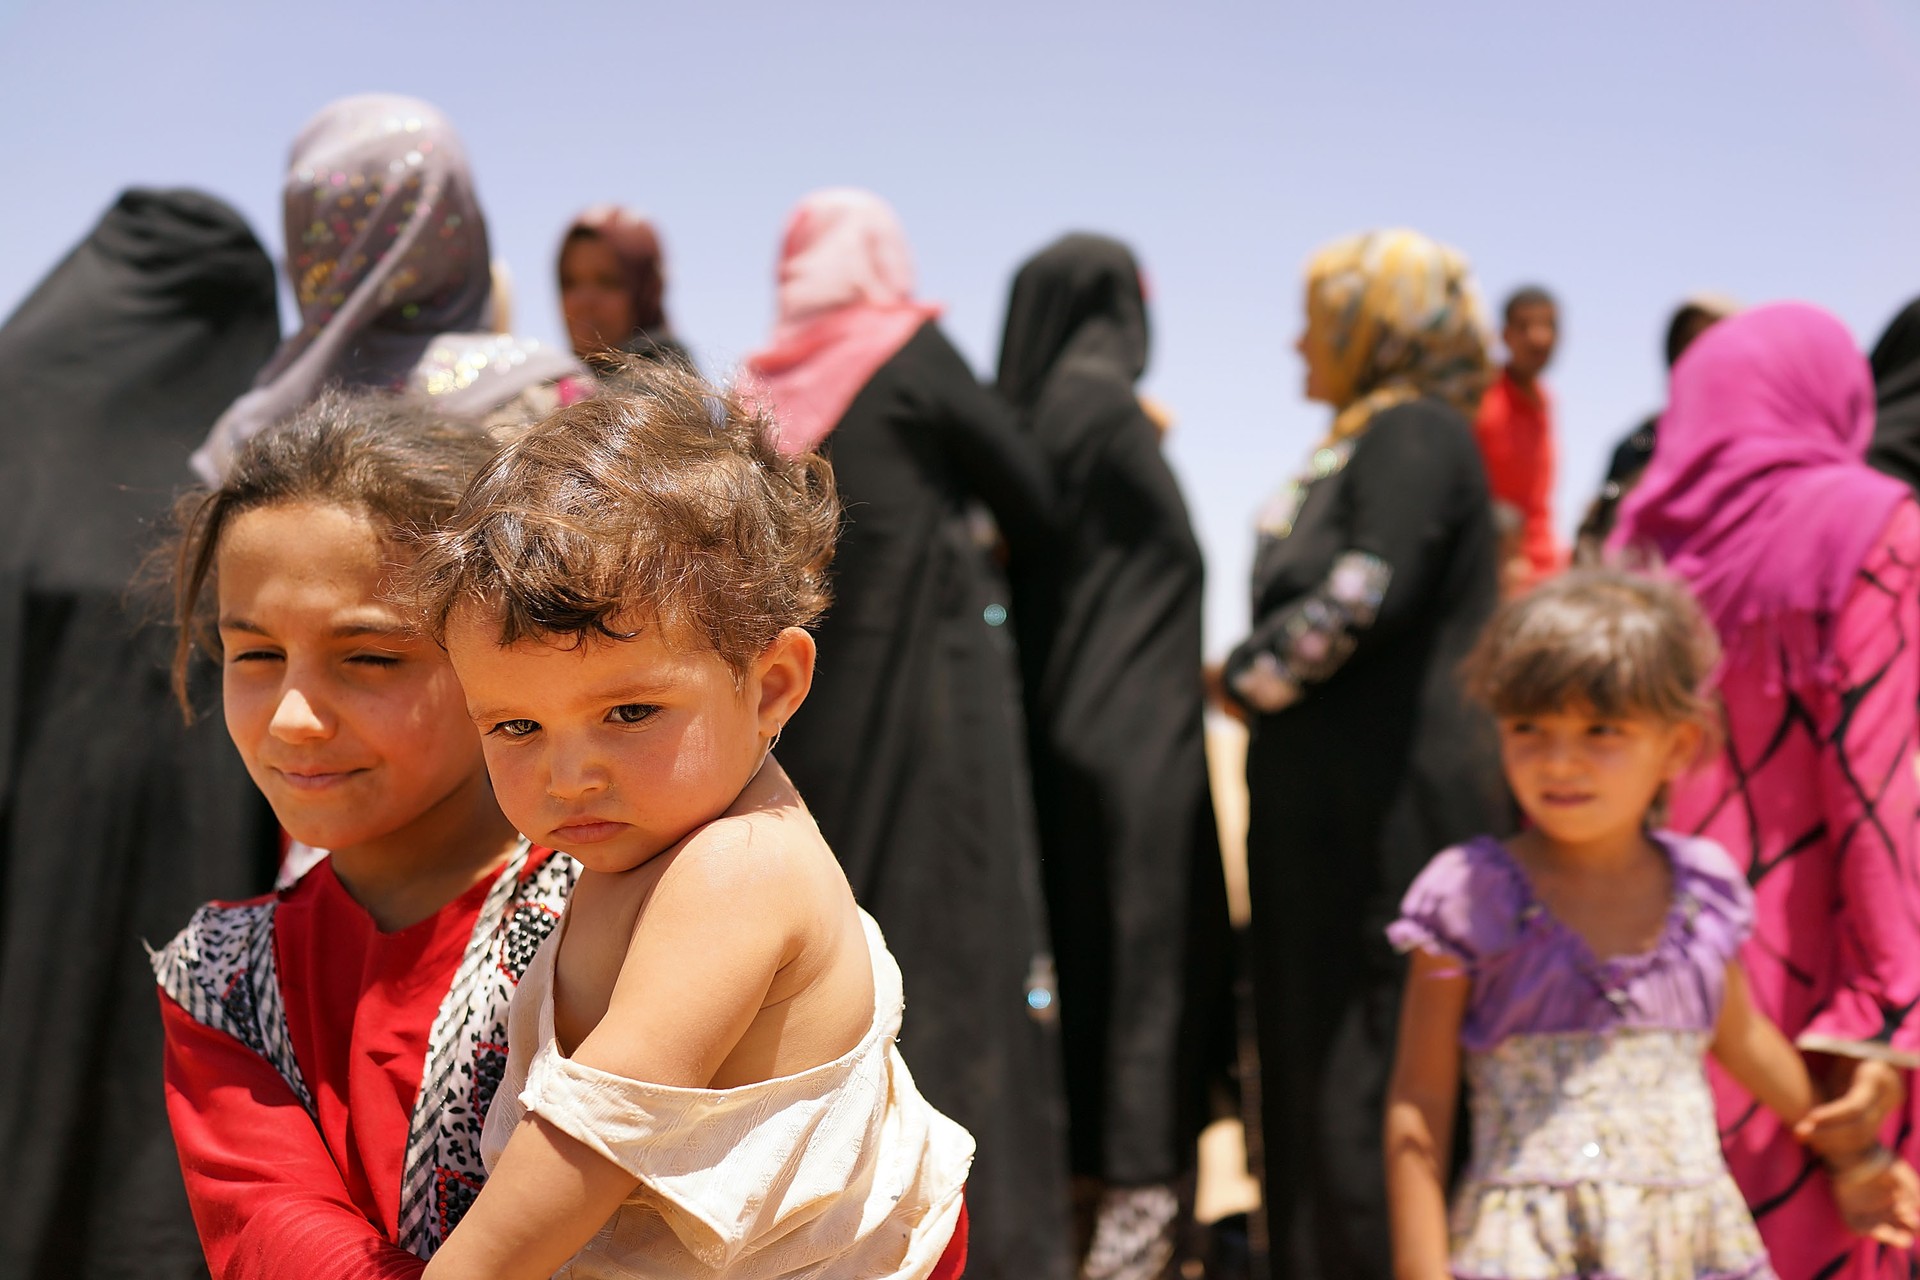 Crianças e mulheres em fuga após batalha de grupo islâmico no norte do Iraque (Foto: Getty Images)